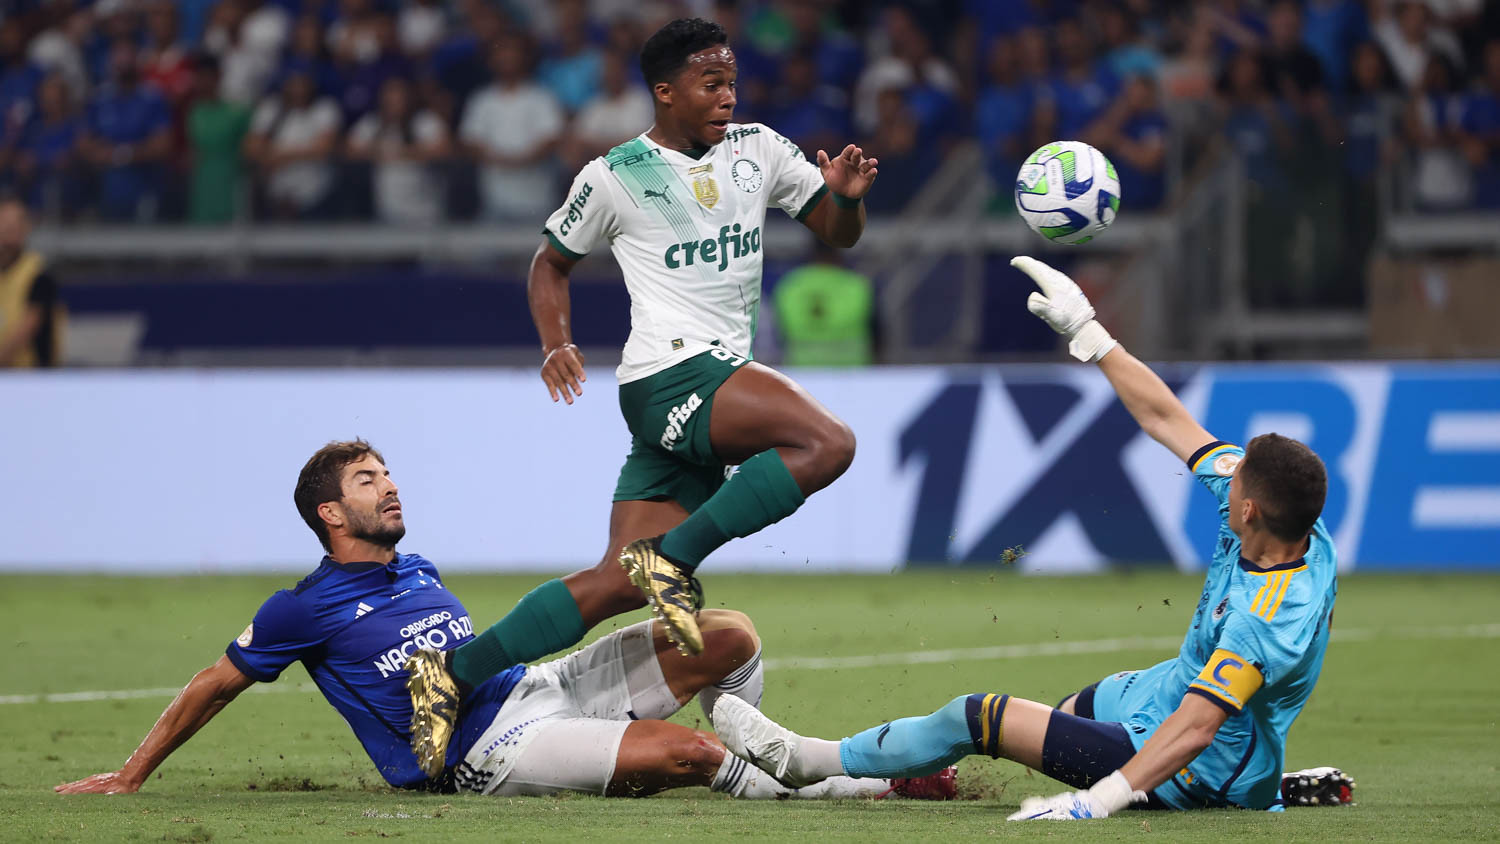 Palmeiras empata com o Cruzeiro e conquista o Brasileirão